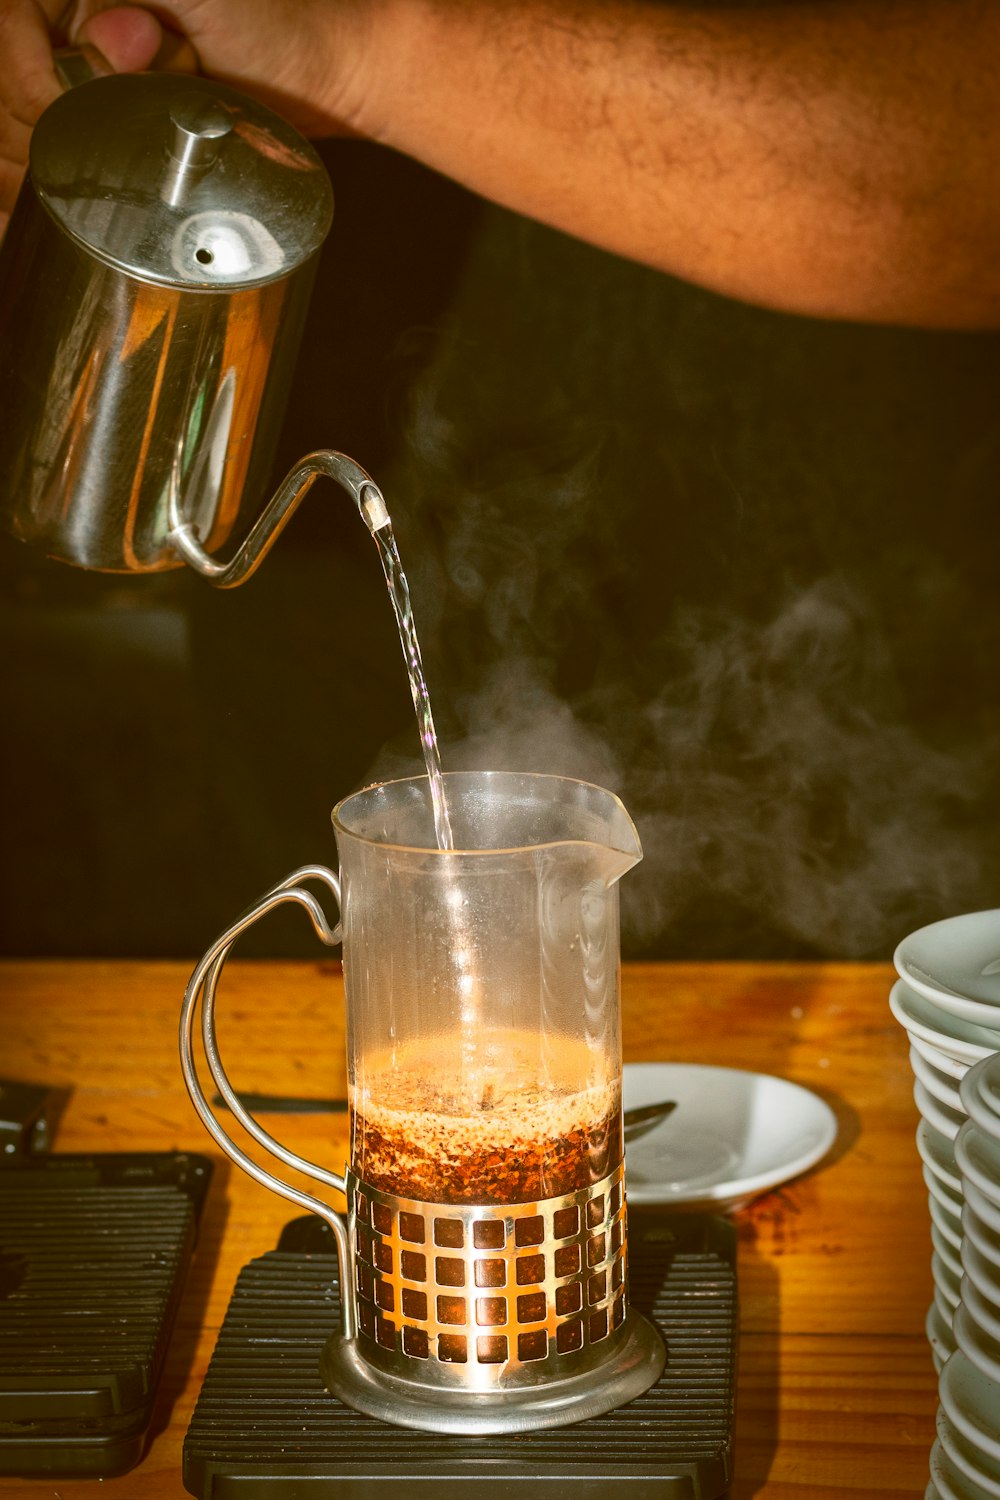 a person pours coffee into a glass mug